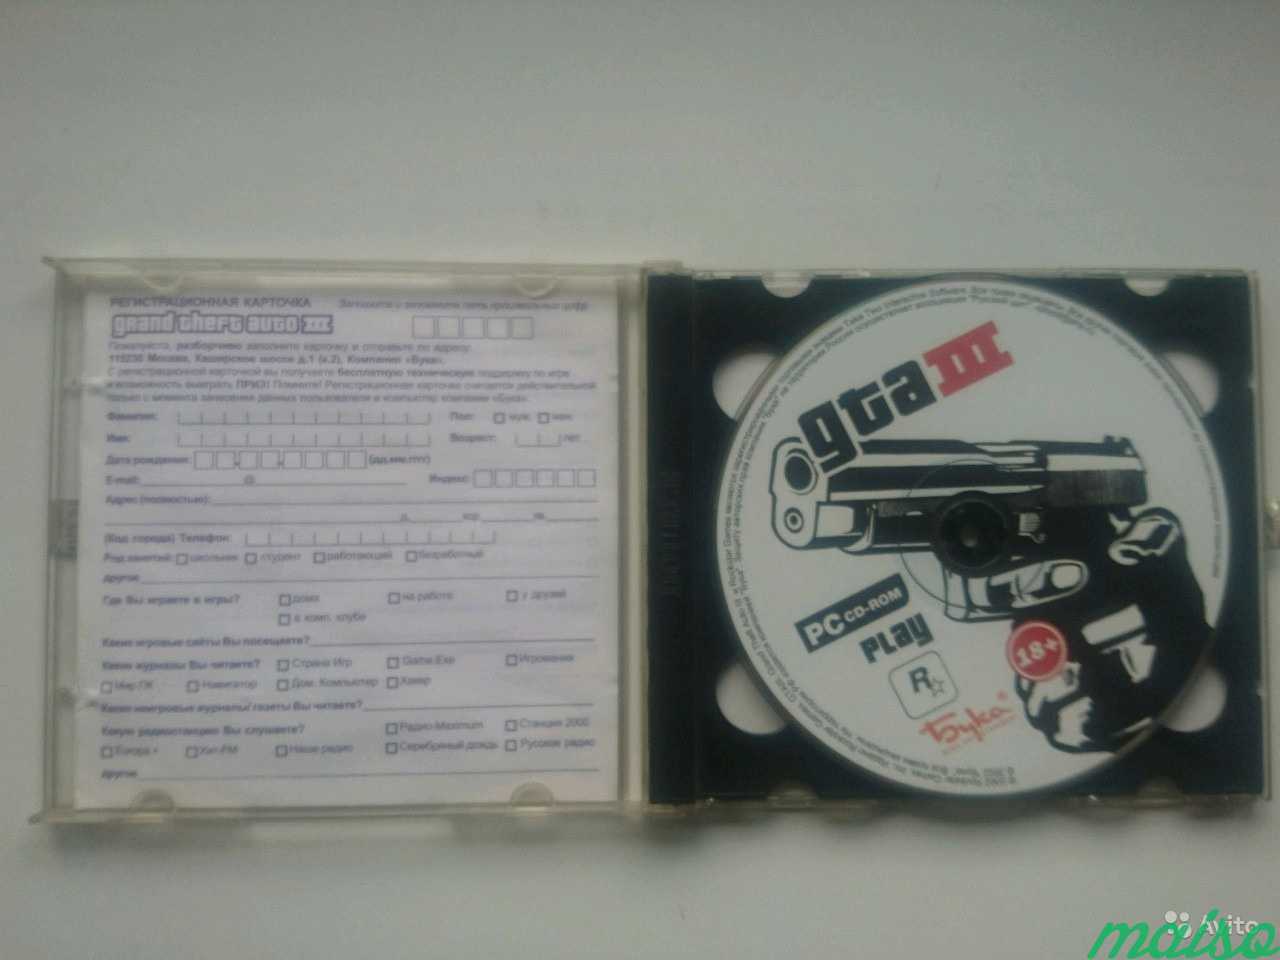 Лицензионный диск GTA III для PC издательство Бука в Санкт-Петербурге. Фото 2